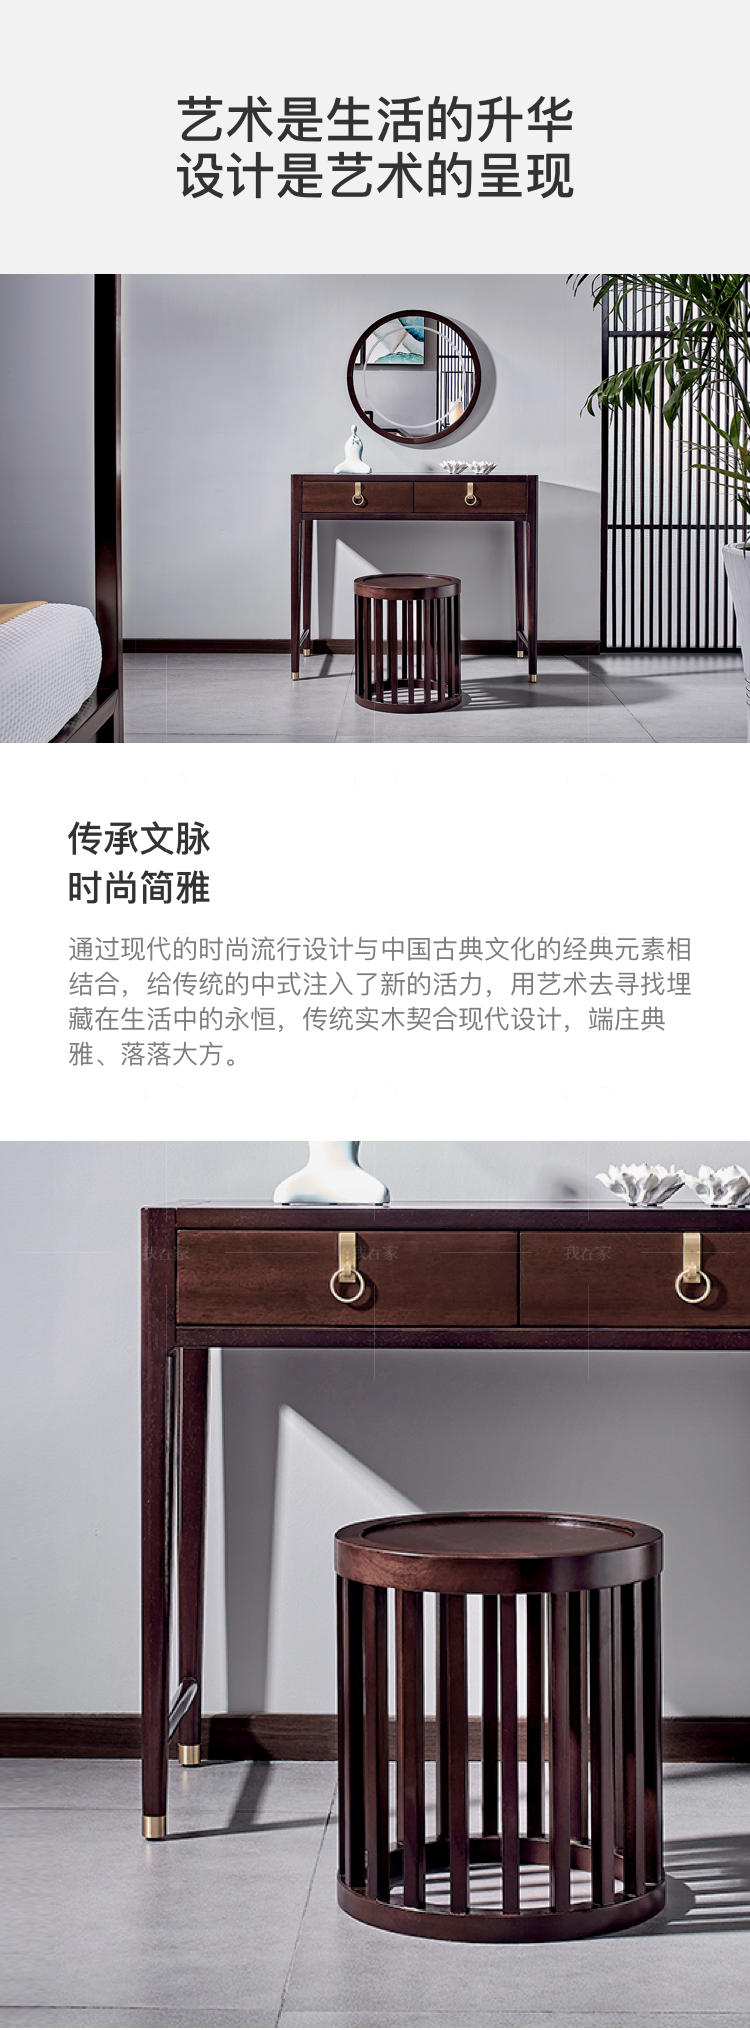 新中式风格似锦梳妆凳的家具详细介绍